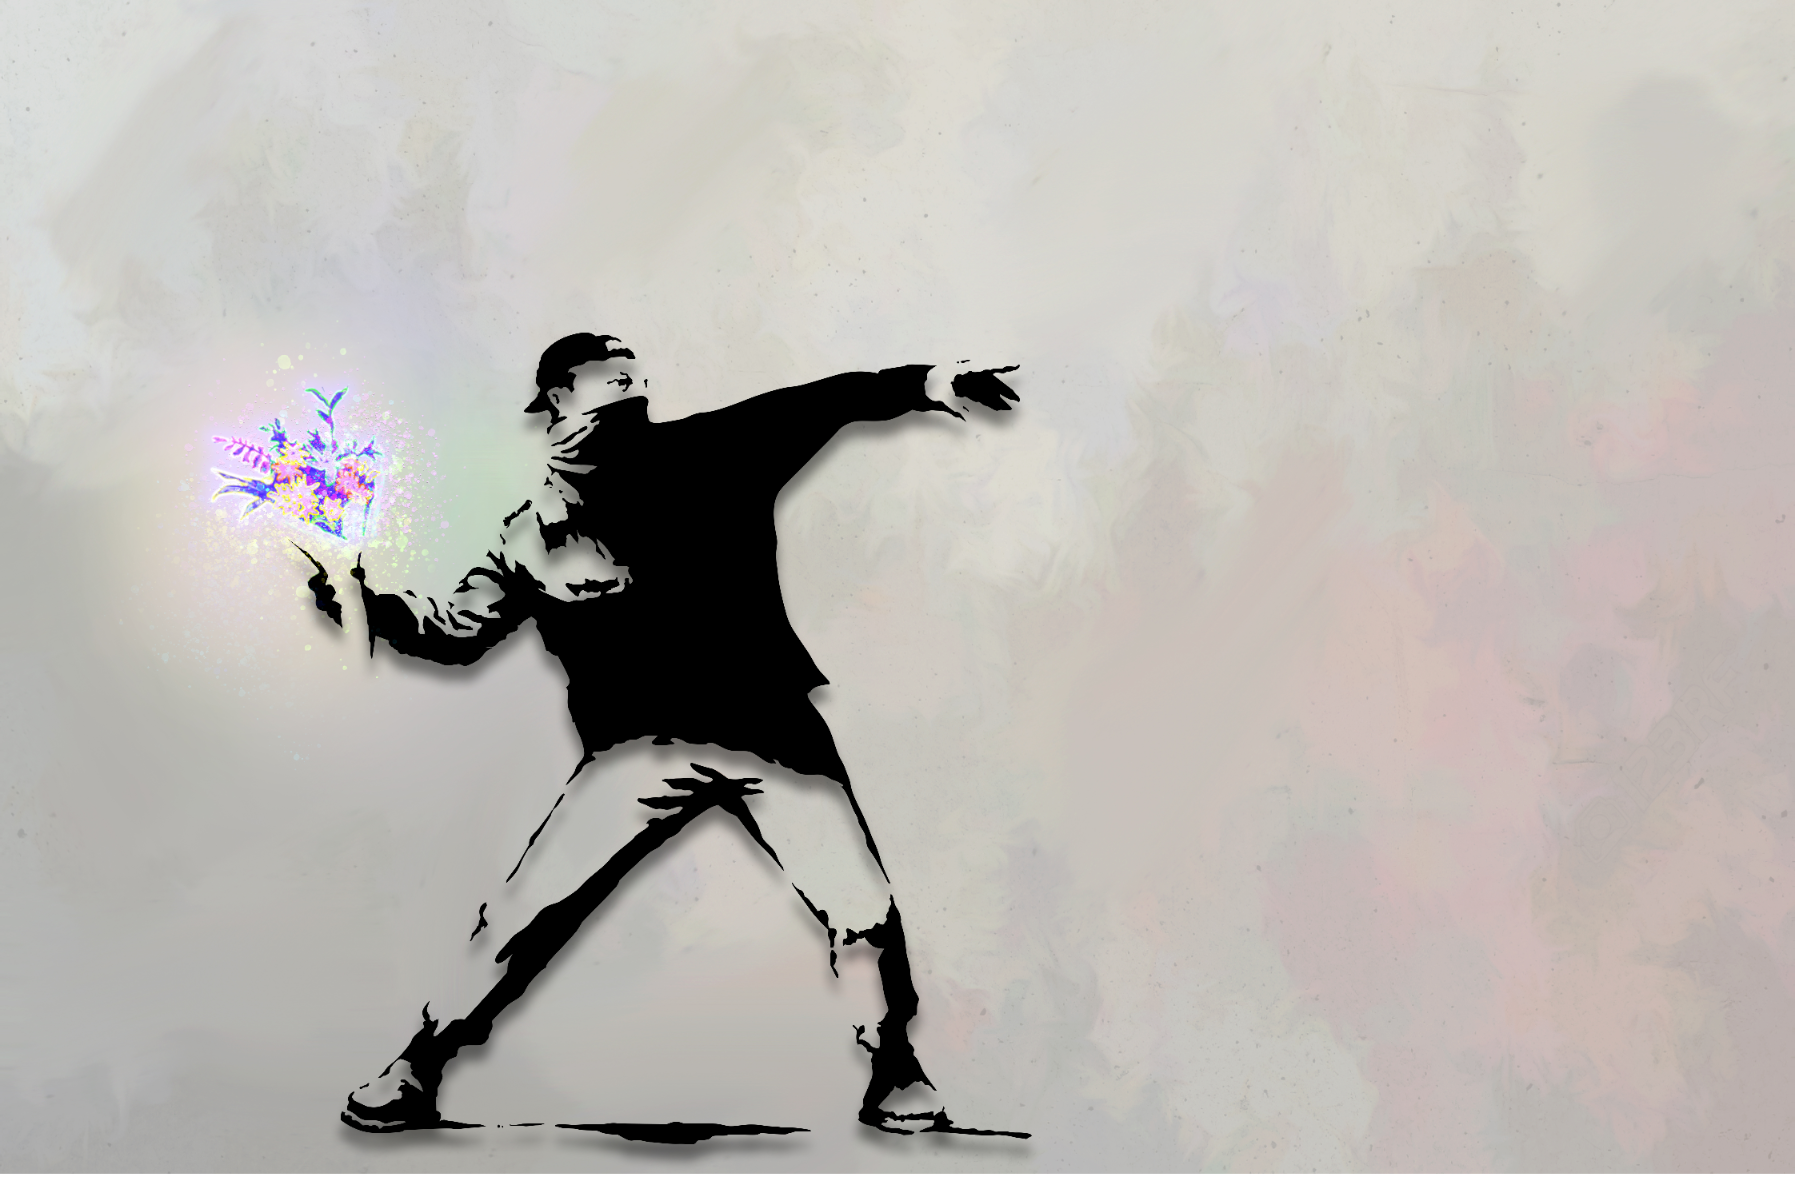 Flower Thrower (Neon) Banksy inspired